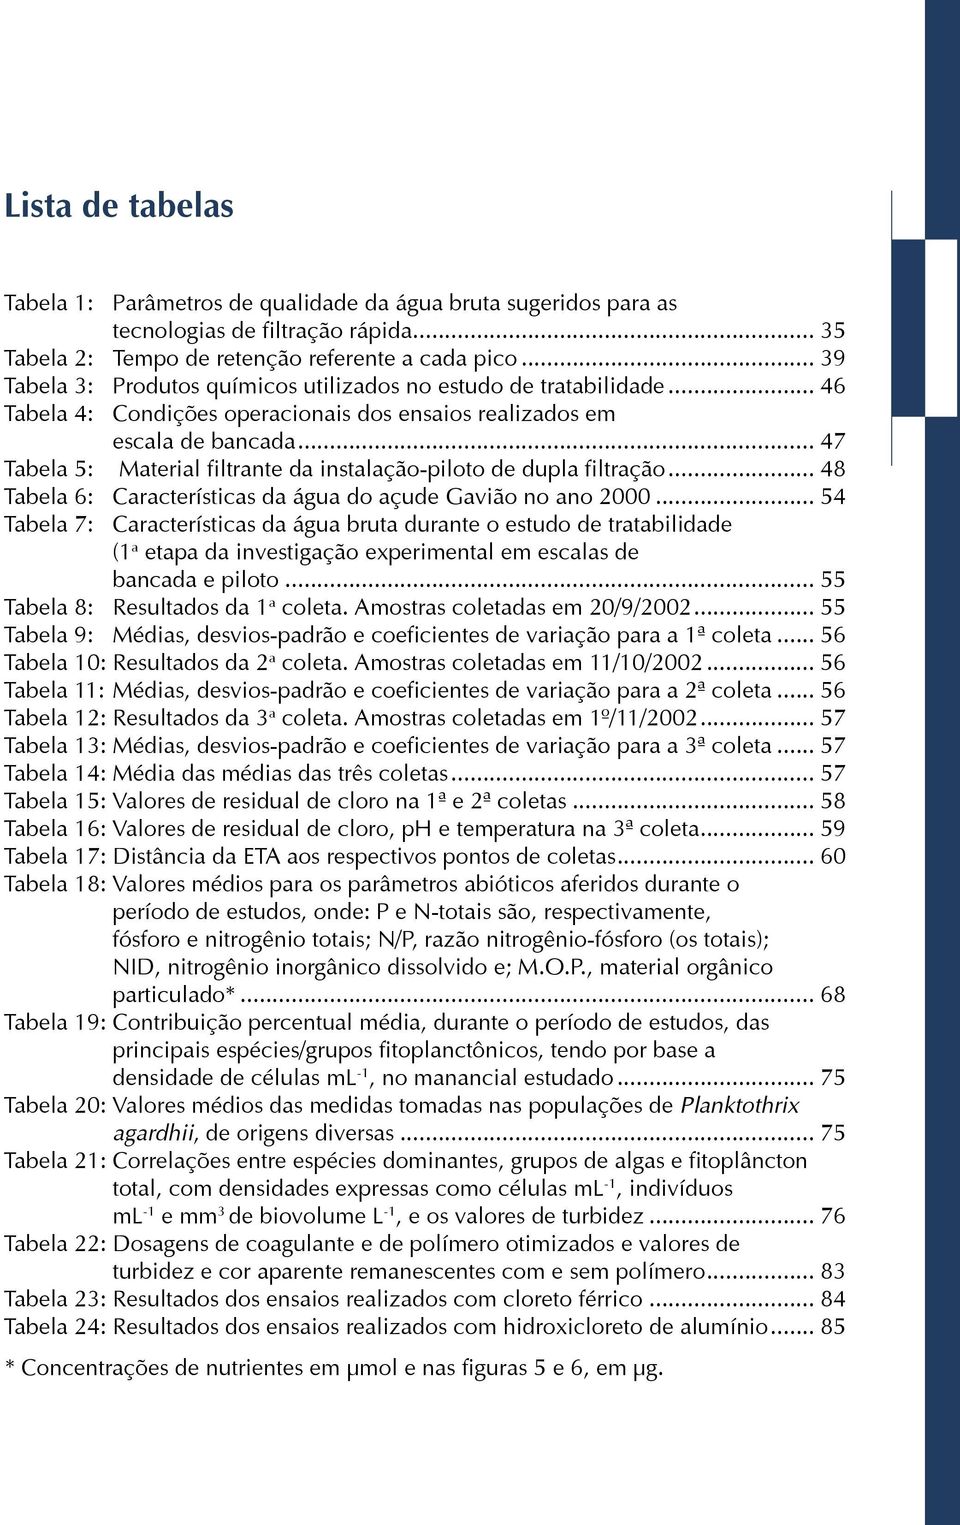 .. 47 Tabela 5: Material filtrante da instalação-piloto de dupla filtração... 48 Tabela 6: Características da água do açude Gavião no ano 2000.